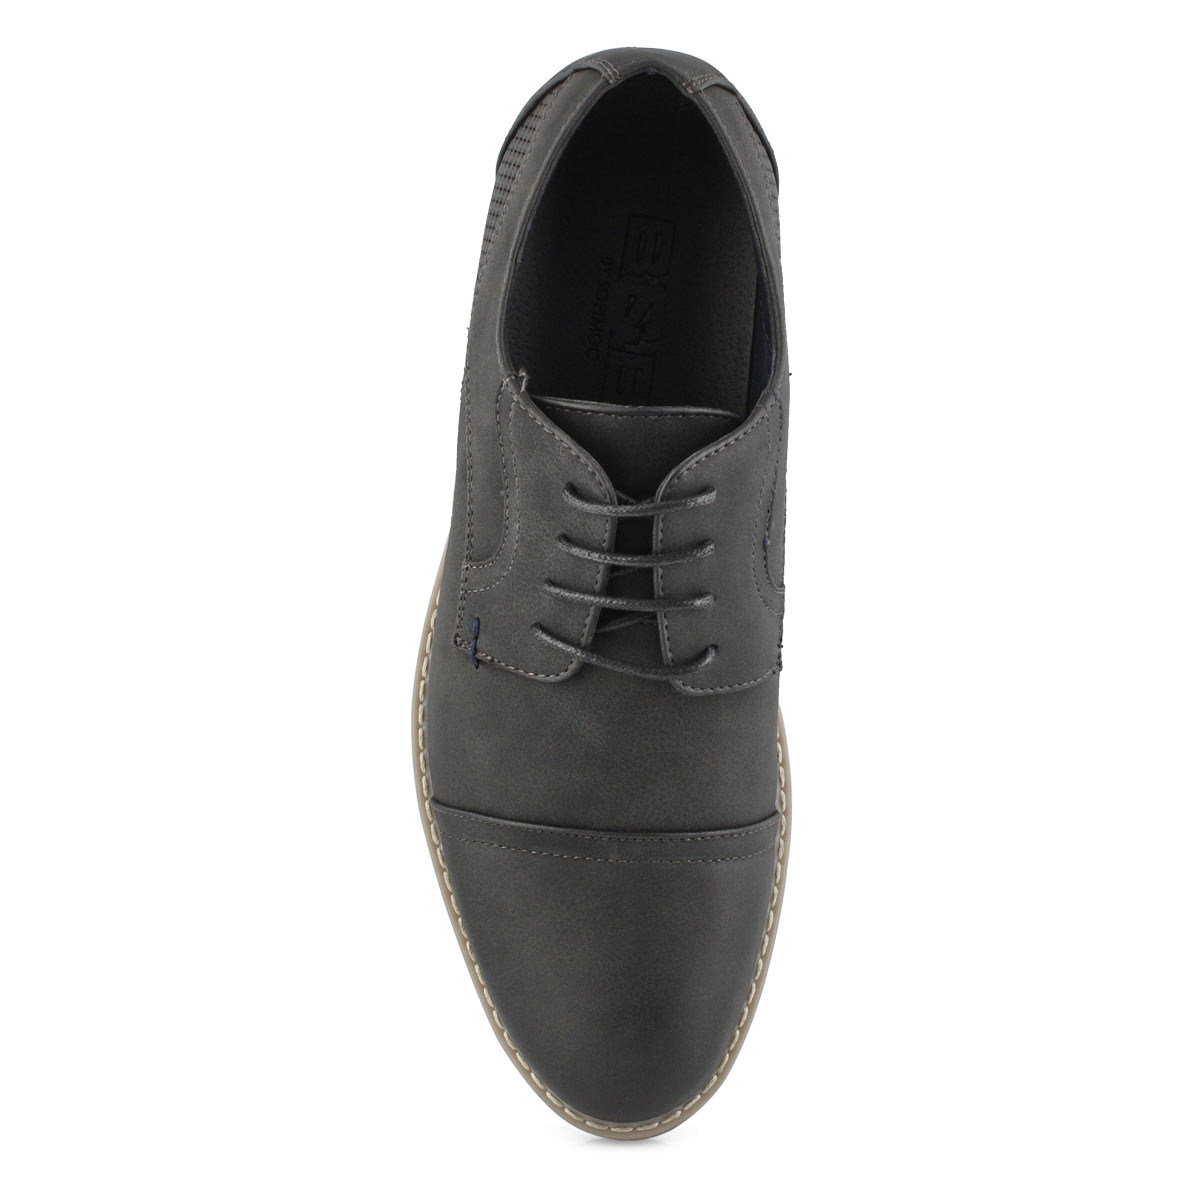 Men's Jack2 Casual Shoe - Black